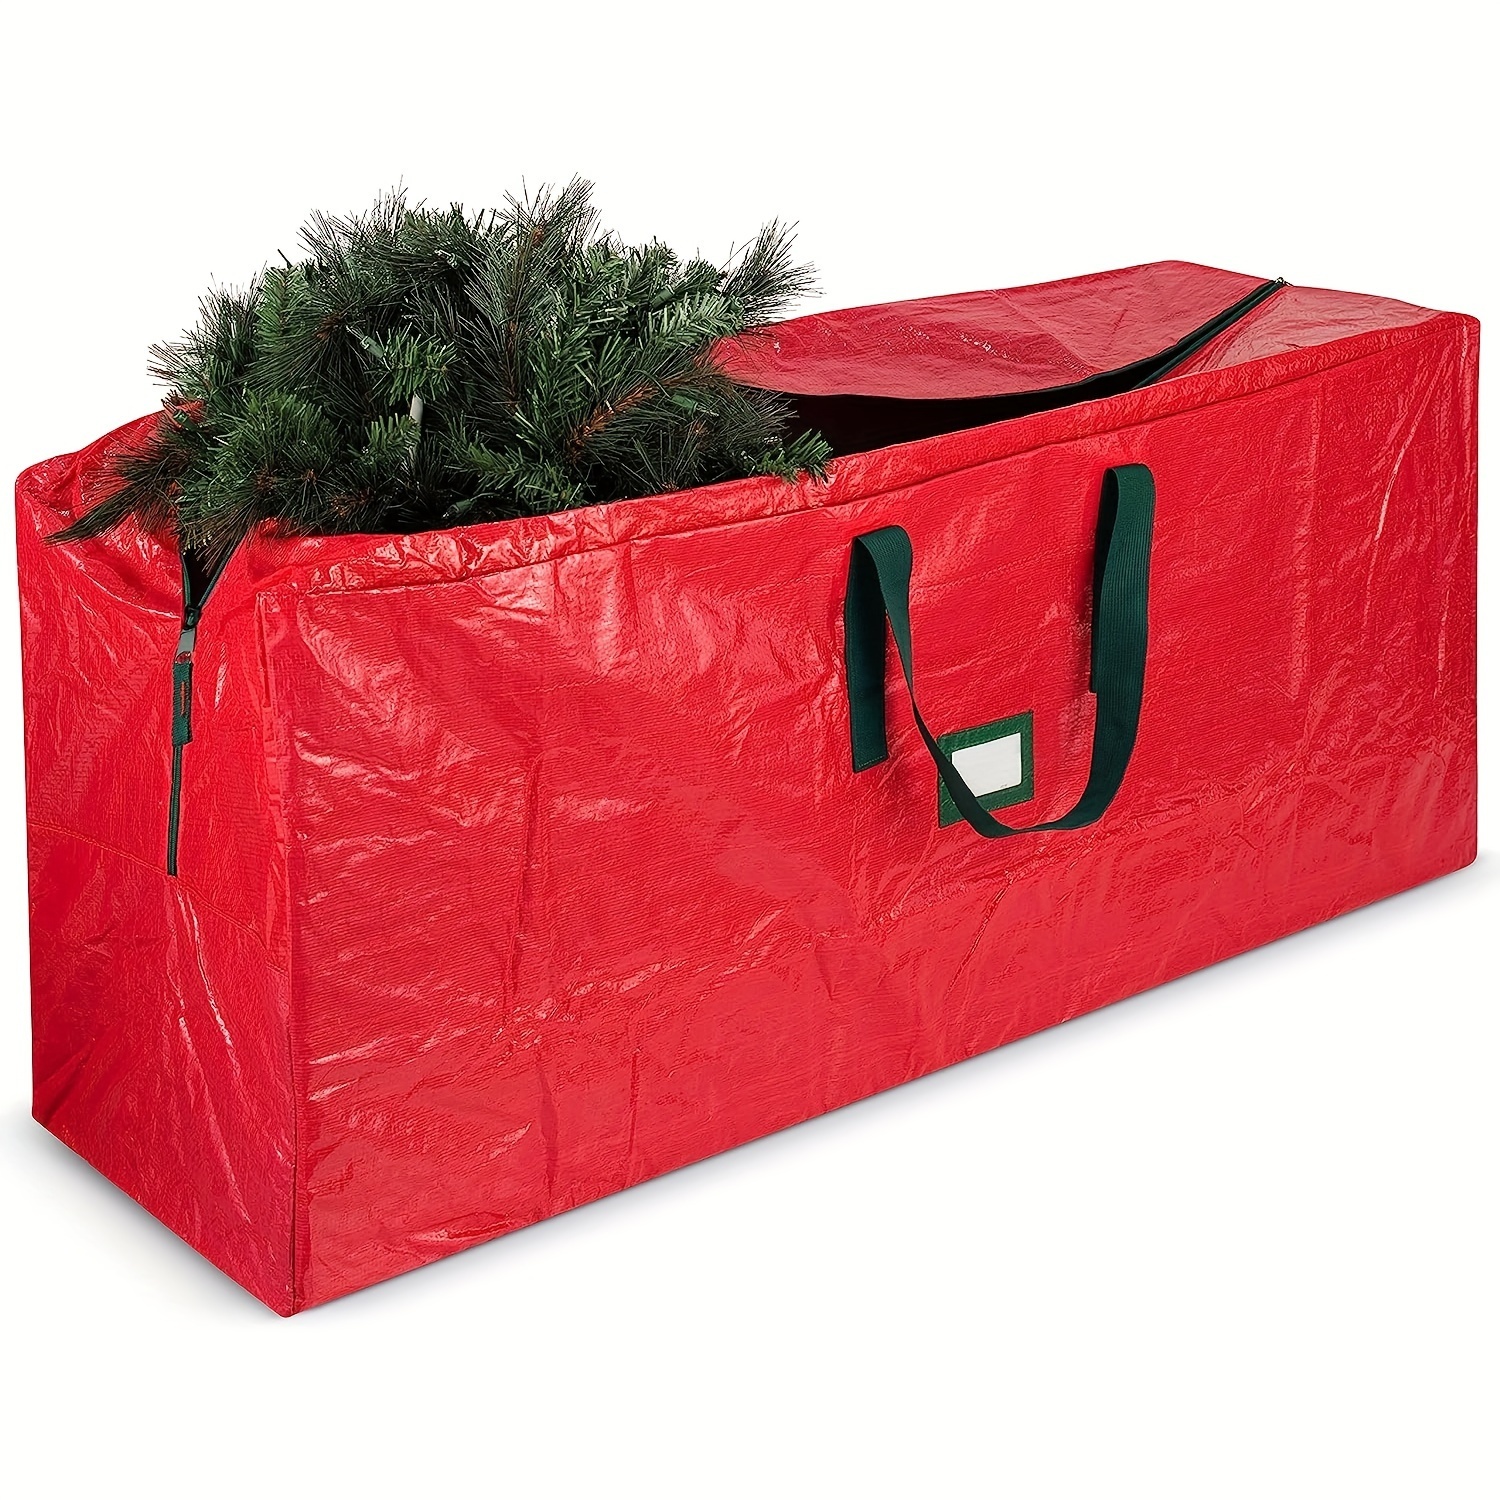 Grand sac de rangement pour sapin de Noël – Convient aux grands arbres  jusqu'à 2,7 m – Sacs de rangement indéchirables en tissu Oxford 600D – Sac